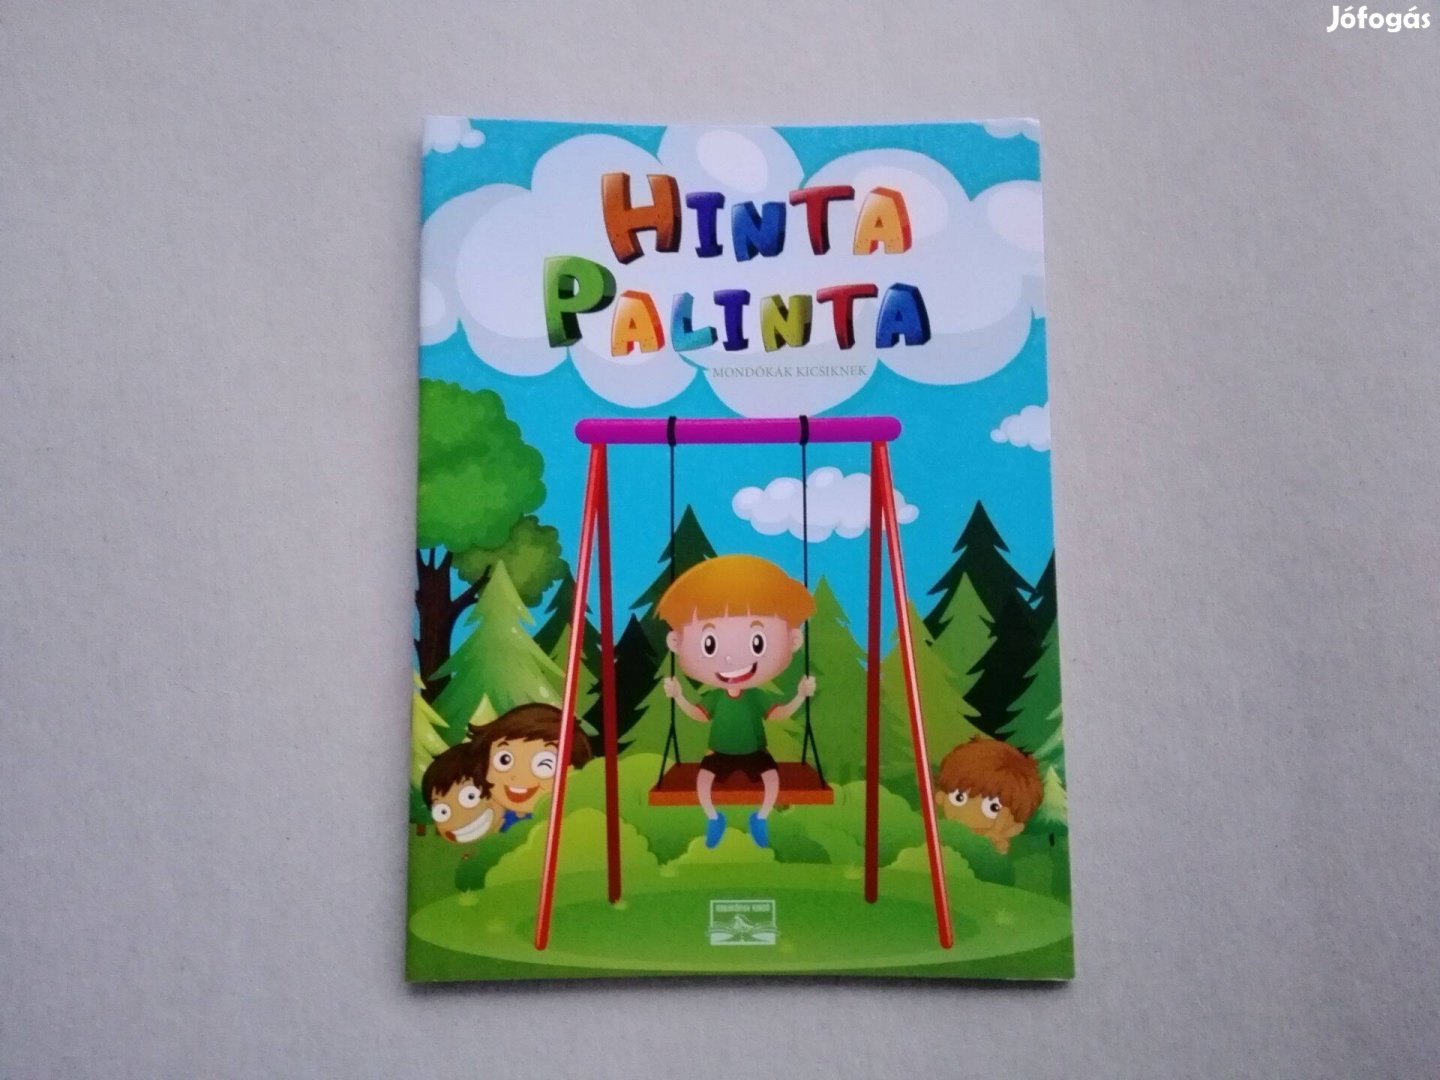 Hinta Palinta-mondókák kicsiknek - teljesen Új könyv akciósan eladó!